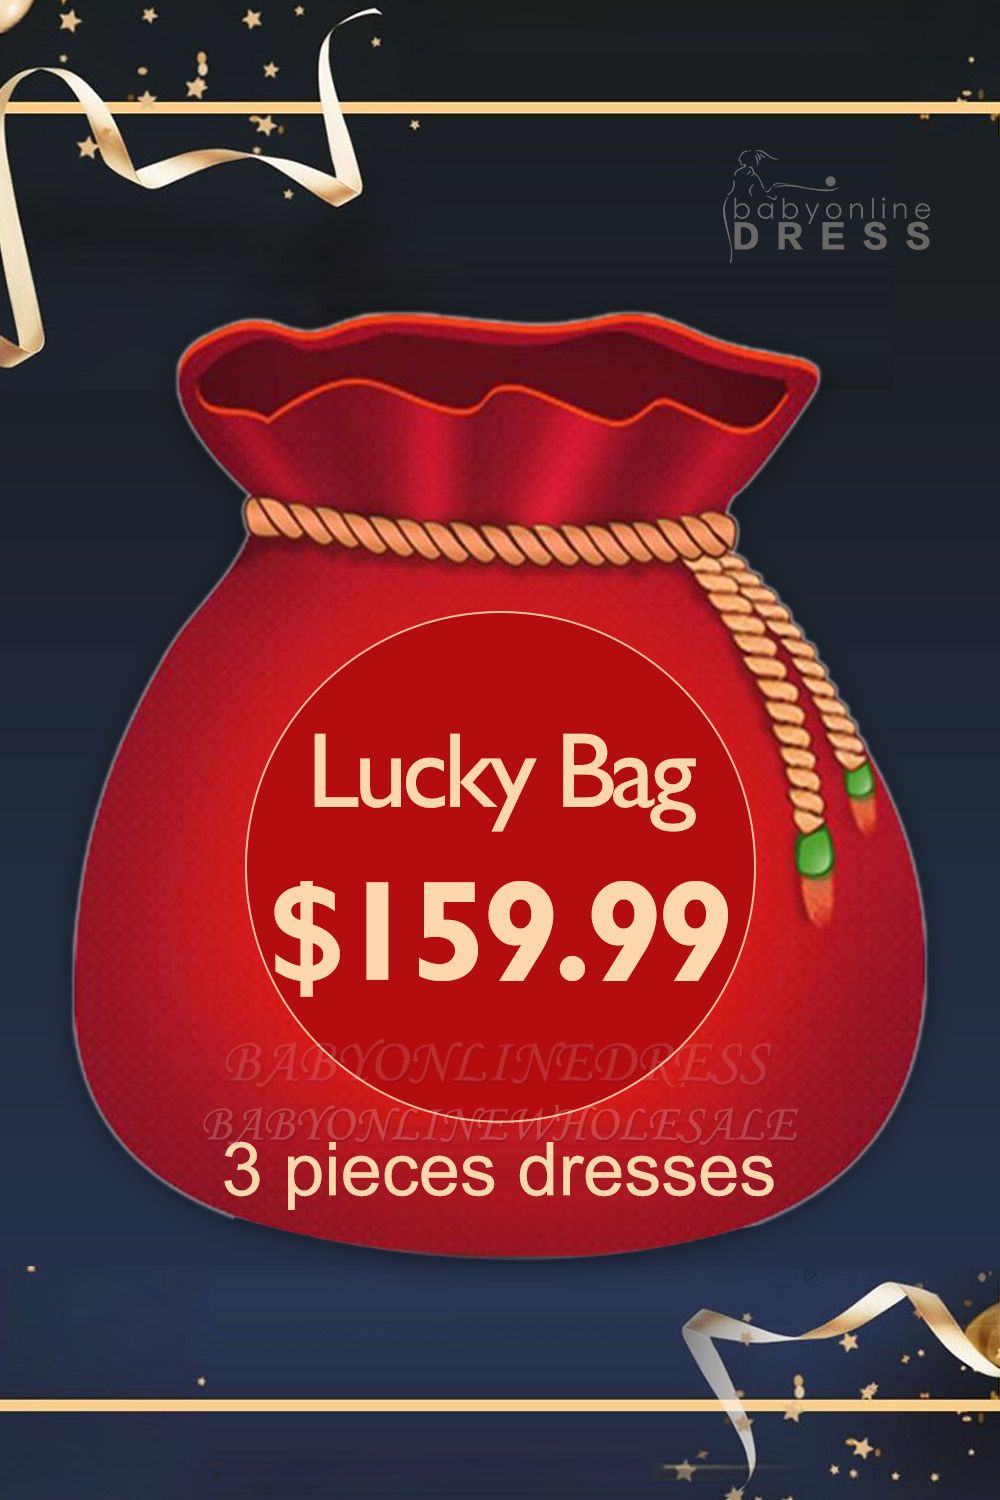 159,99 $ pour obtenir un sac porte-bonheur avec des robes de vente chaudes aléatoires